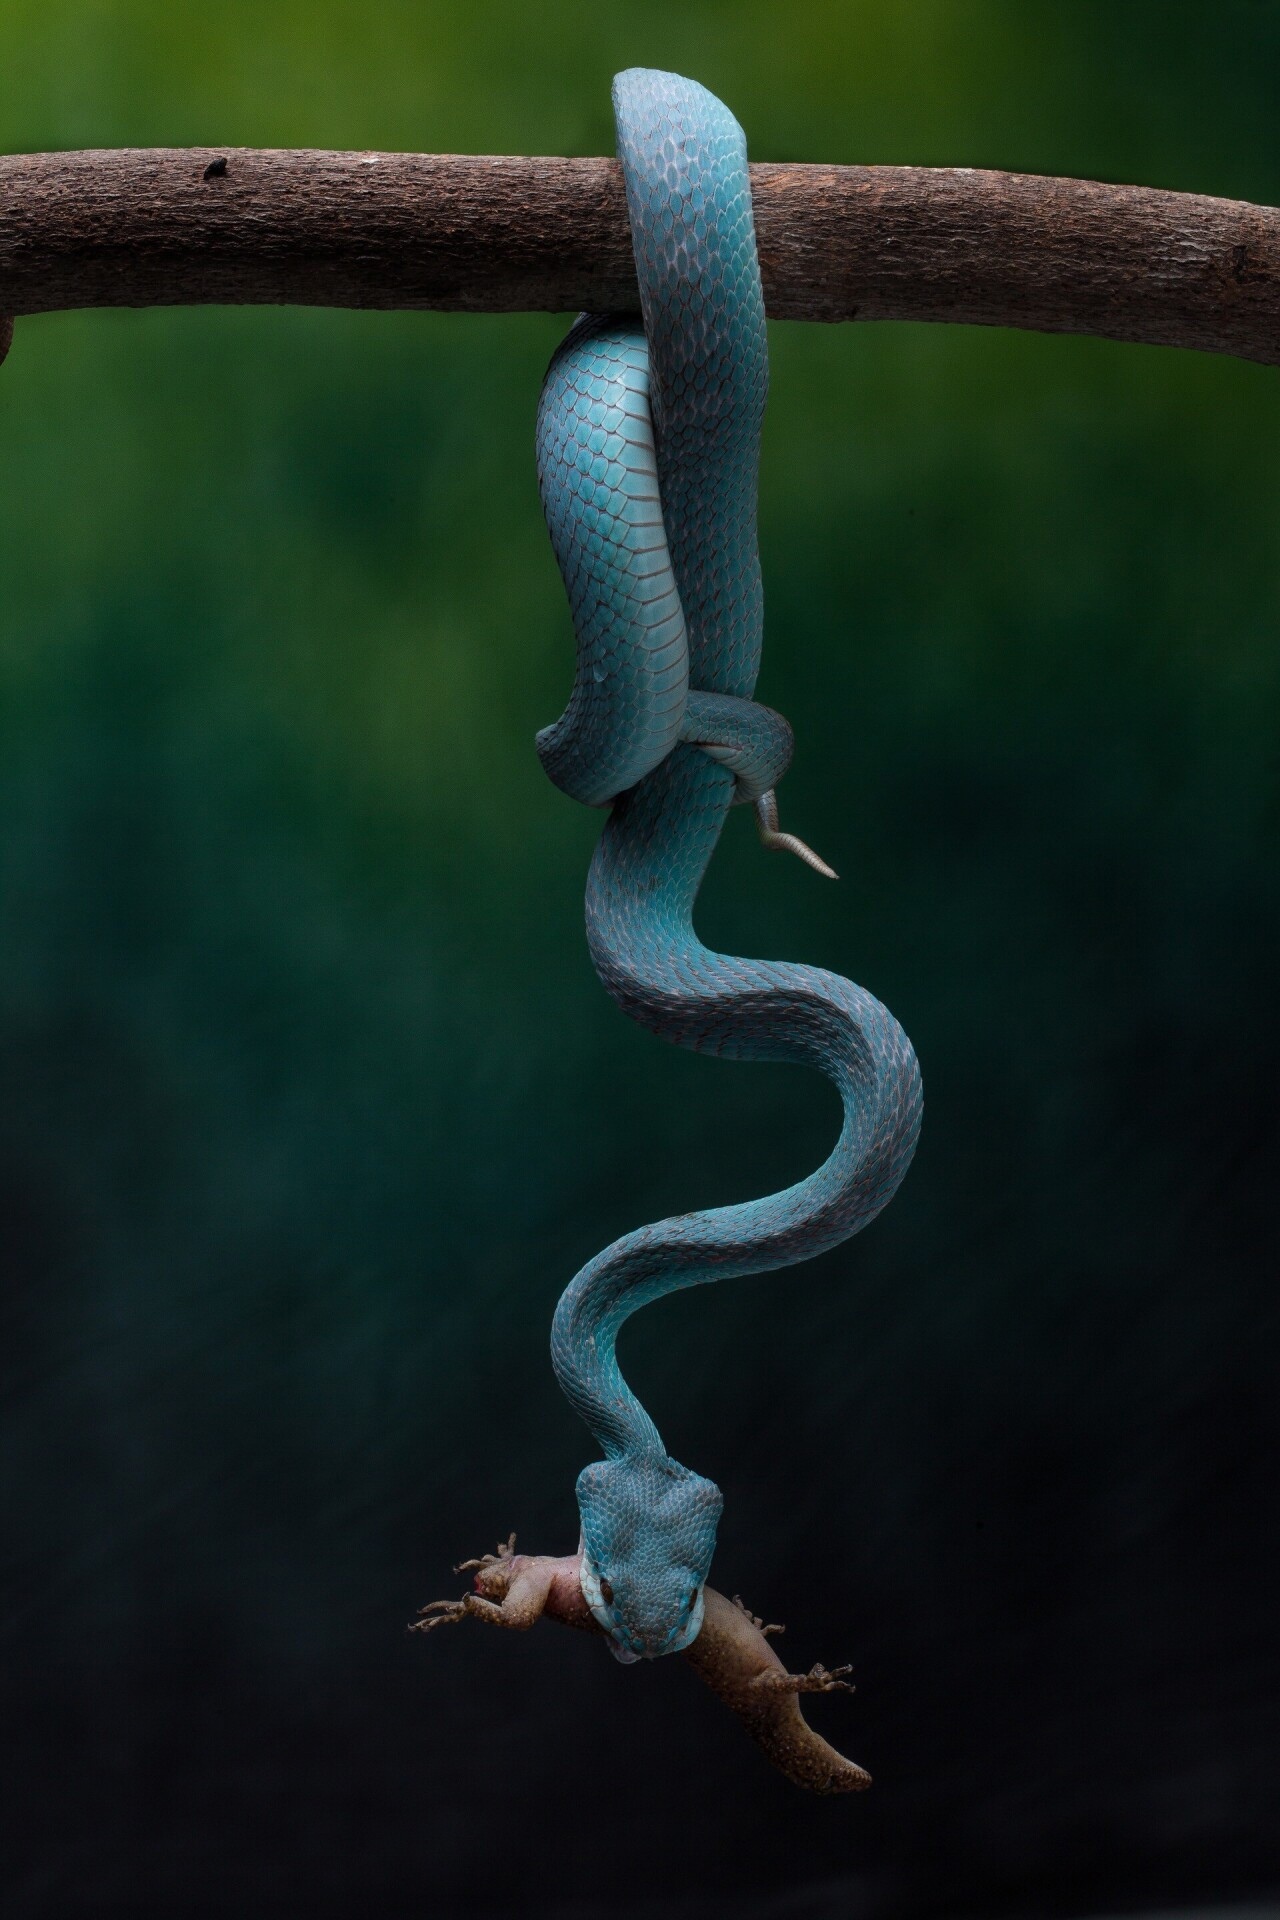 Финалист в категории «Мир природы», 2021. Смертоносная голубая гадюка в Индонезии. Автор Робин Йонг.